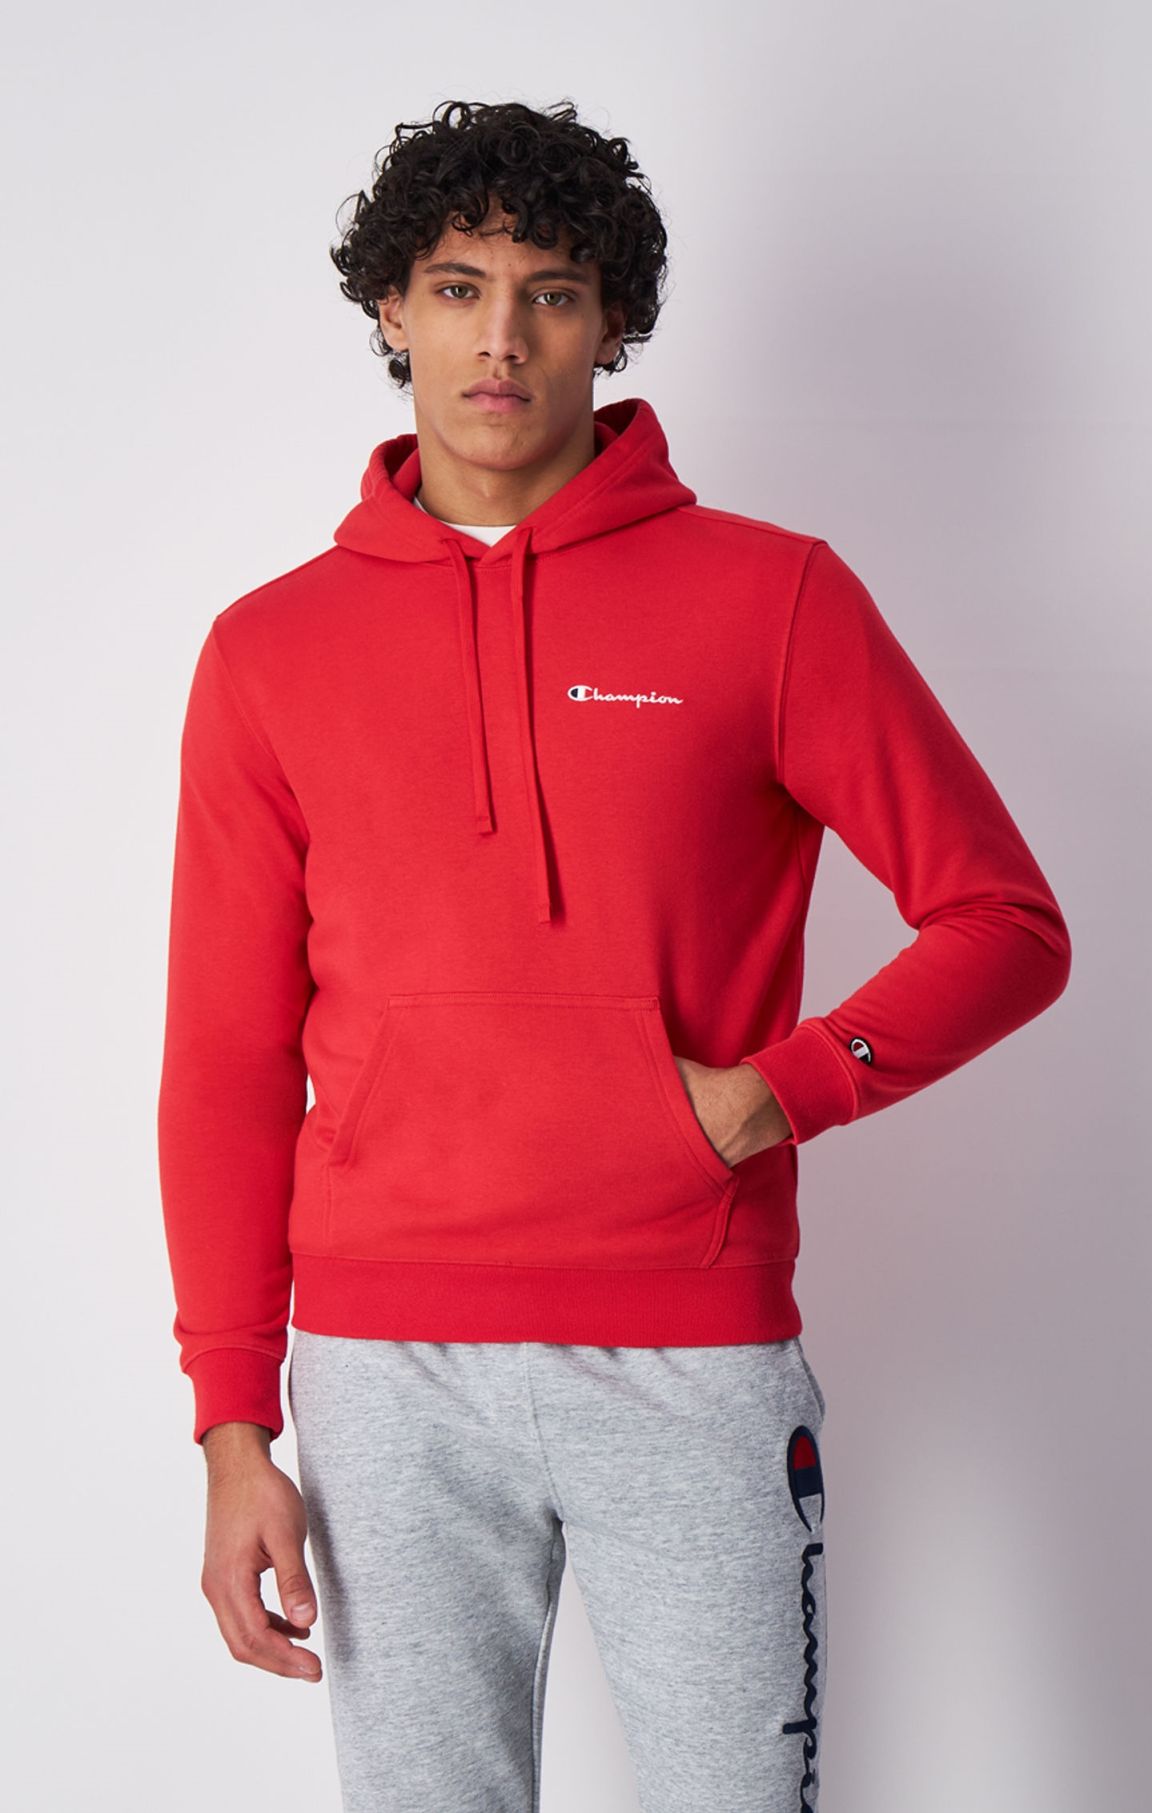 Sweatshirt à capuche et petit logo Champion brodé